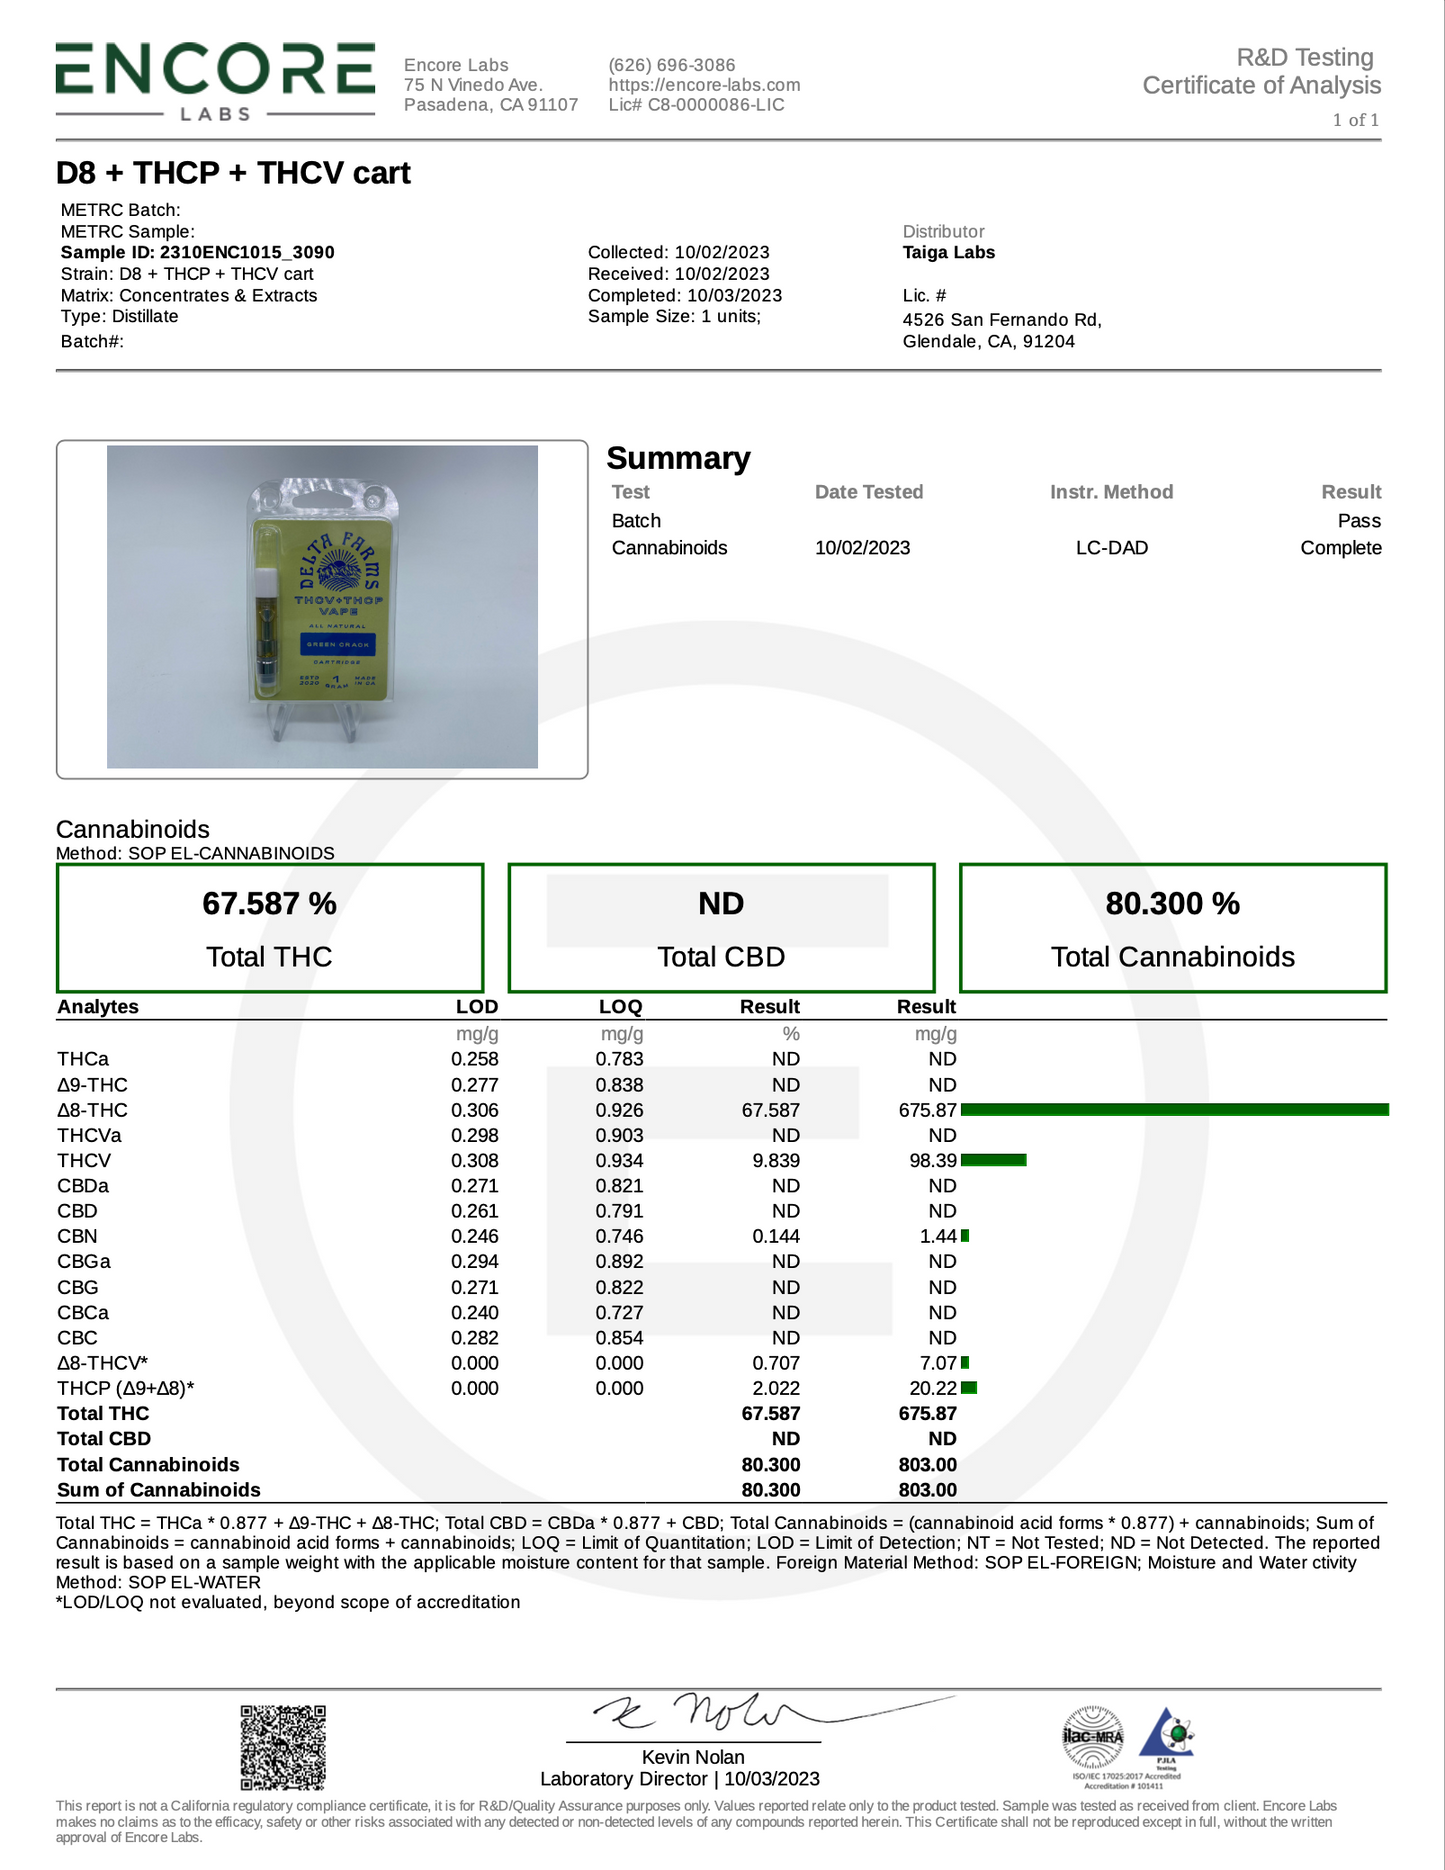 THCV + THCP + Delta-8 THC Vape Cartridge - Green Crack - 1g